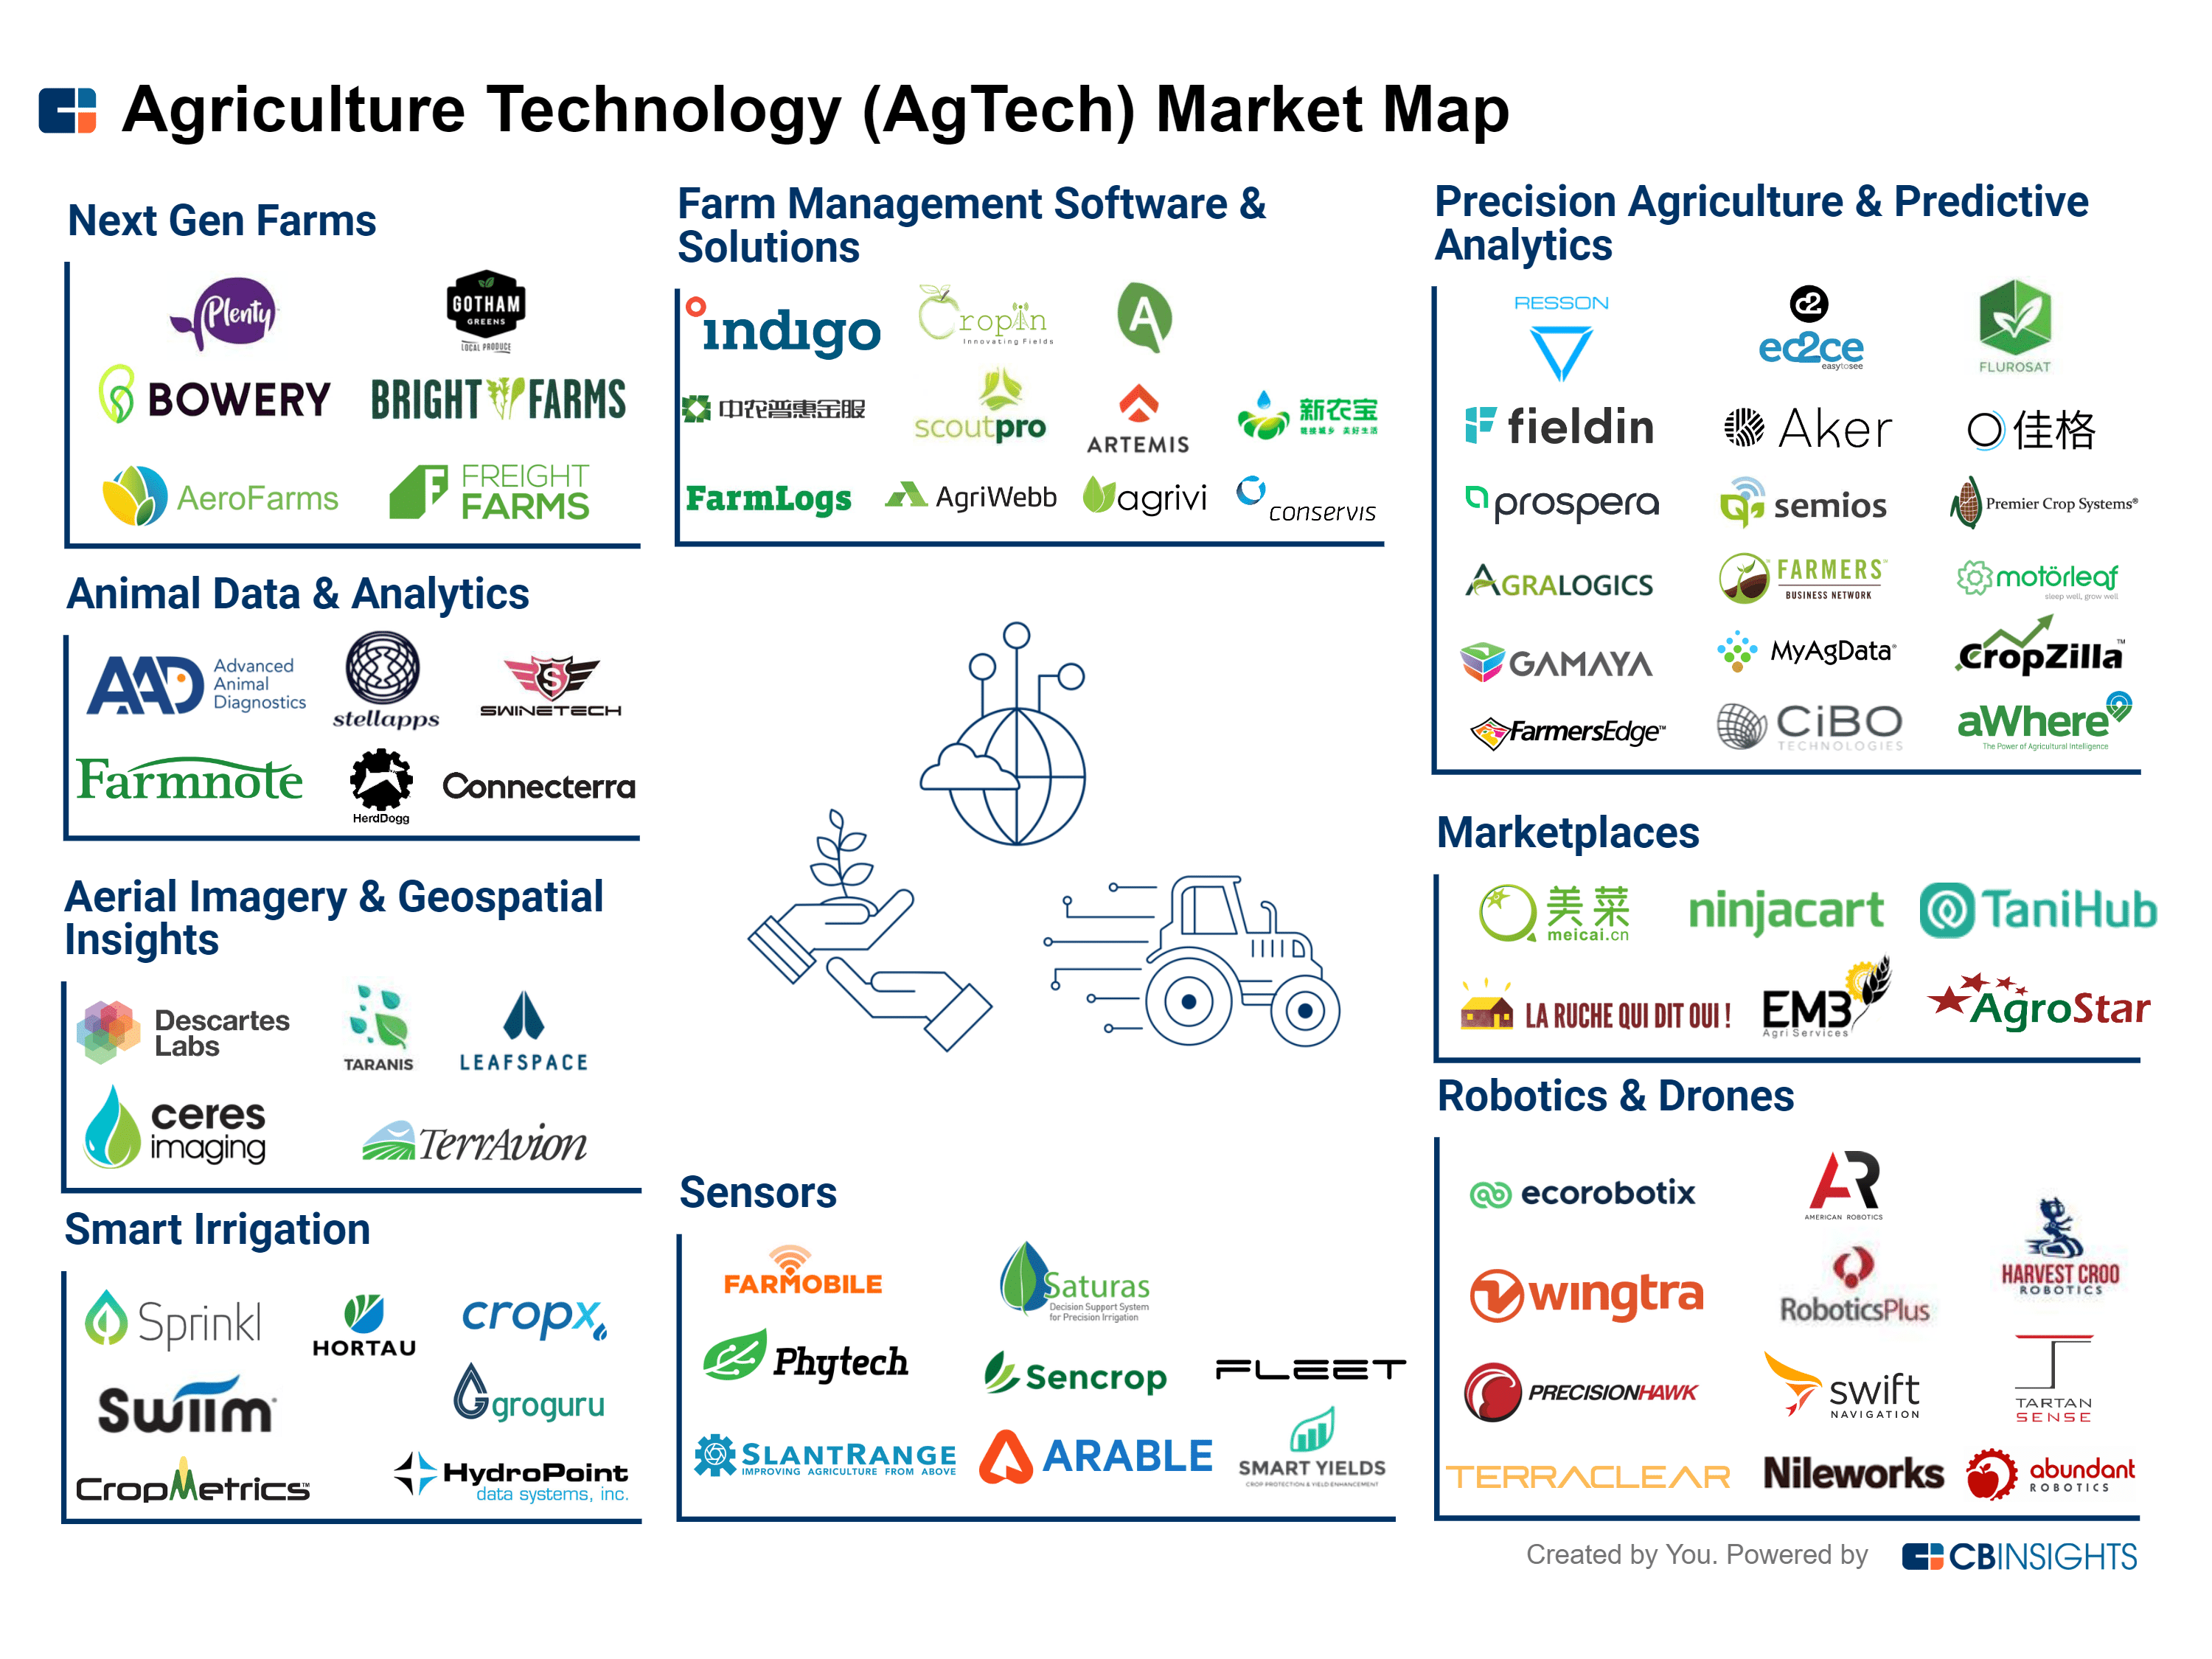 The Agtech Market Map 2020